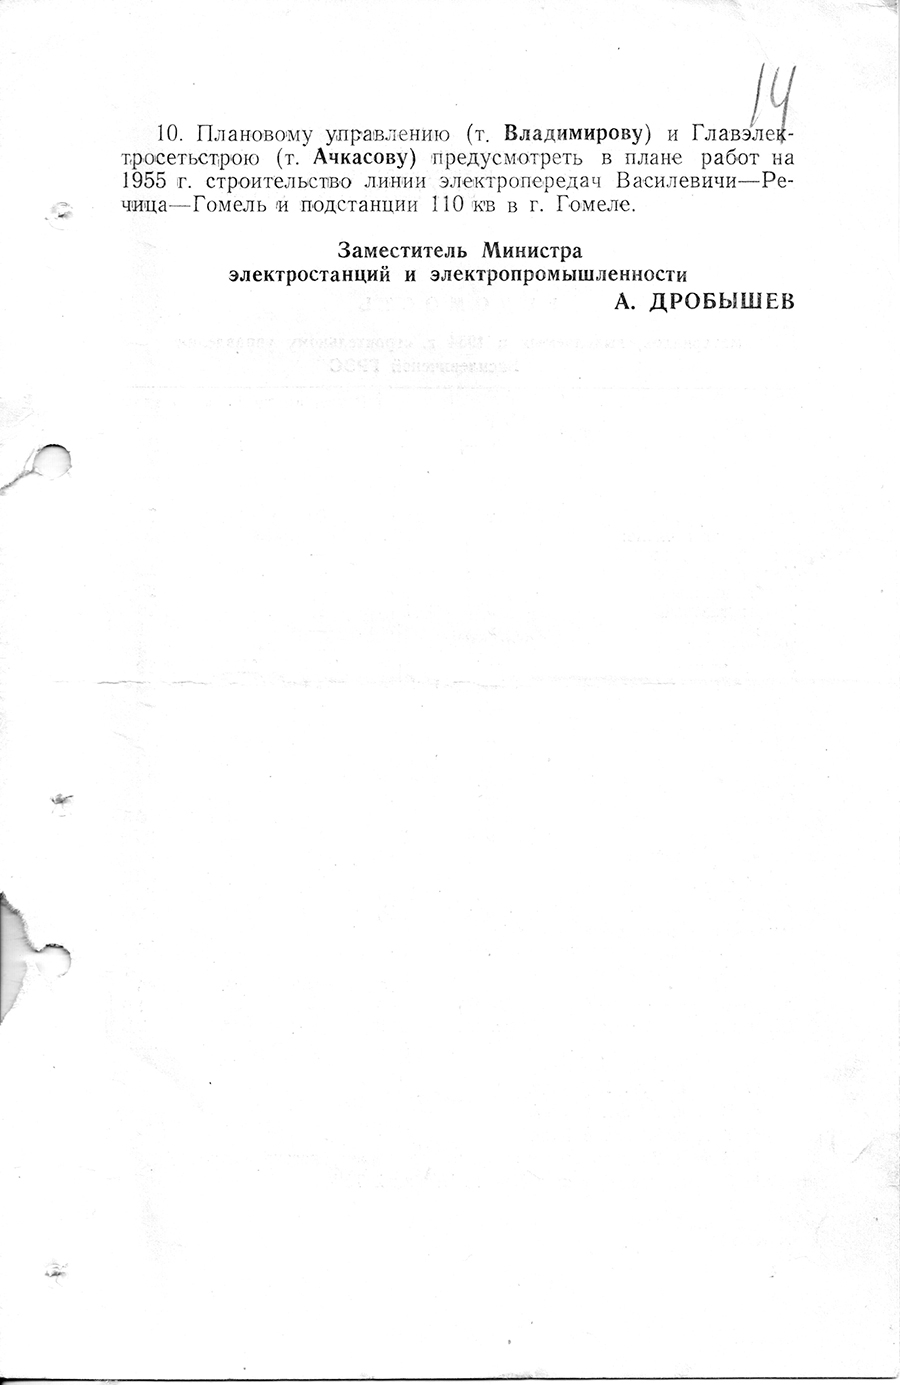 Befehl Nr. 206/a des Ministeriums für Kraftwerke und Elektroindustrie der UdSSR zur Forcierung des Baus des Wassilevich-Kraftwerks-с. 2